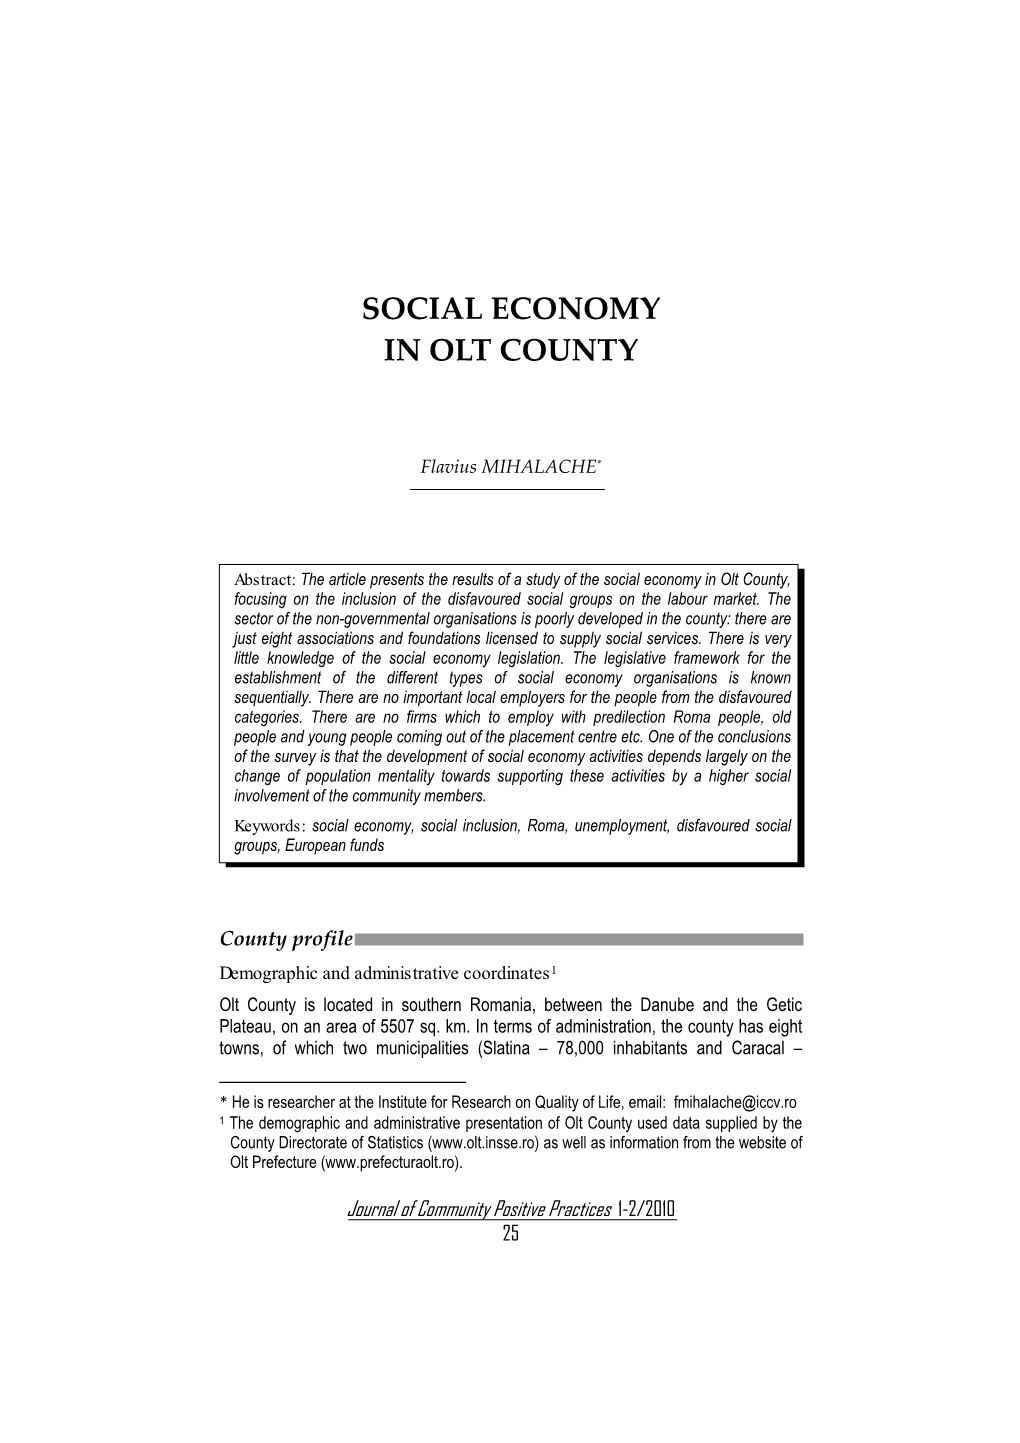 Social Economy in Olt County